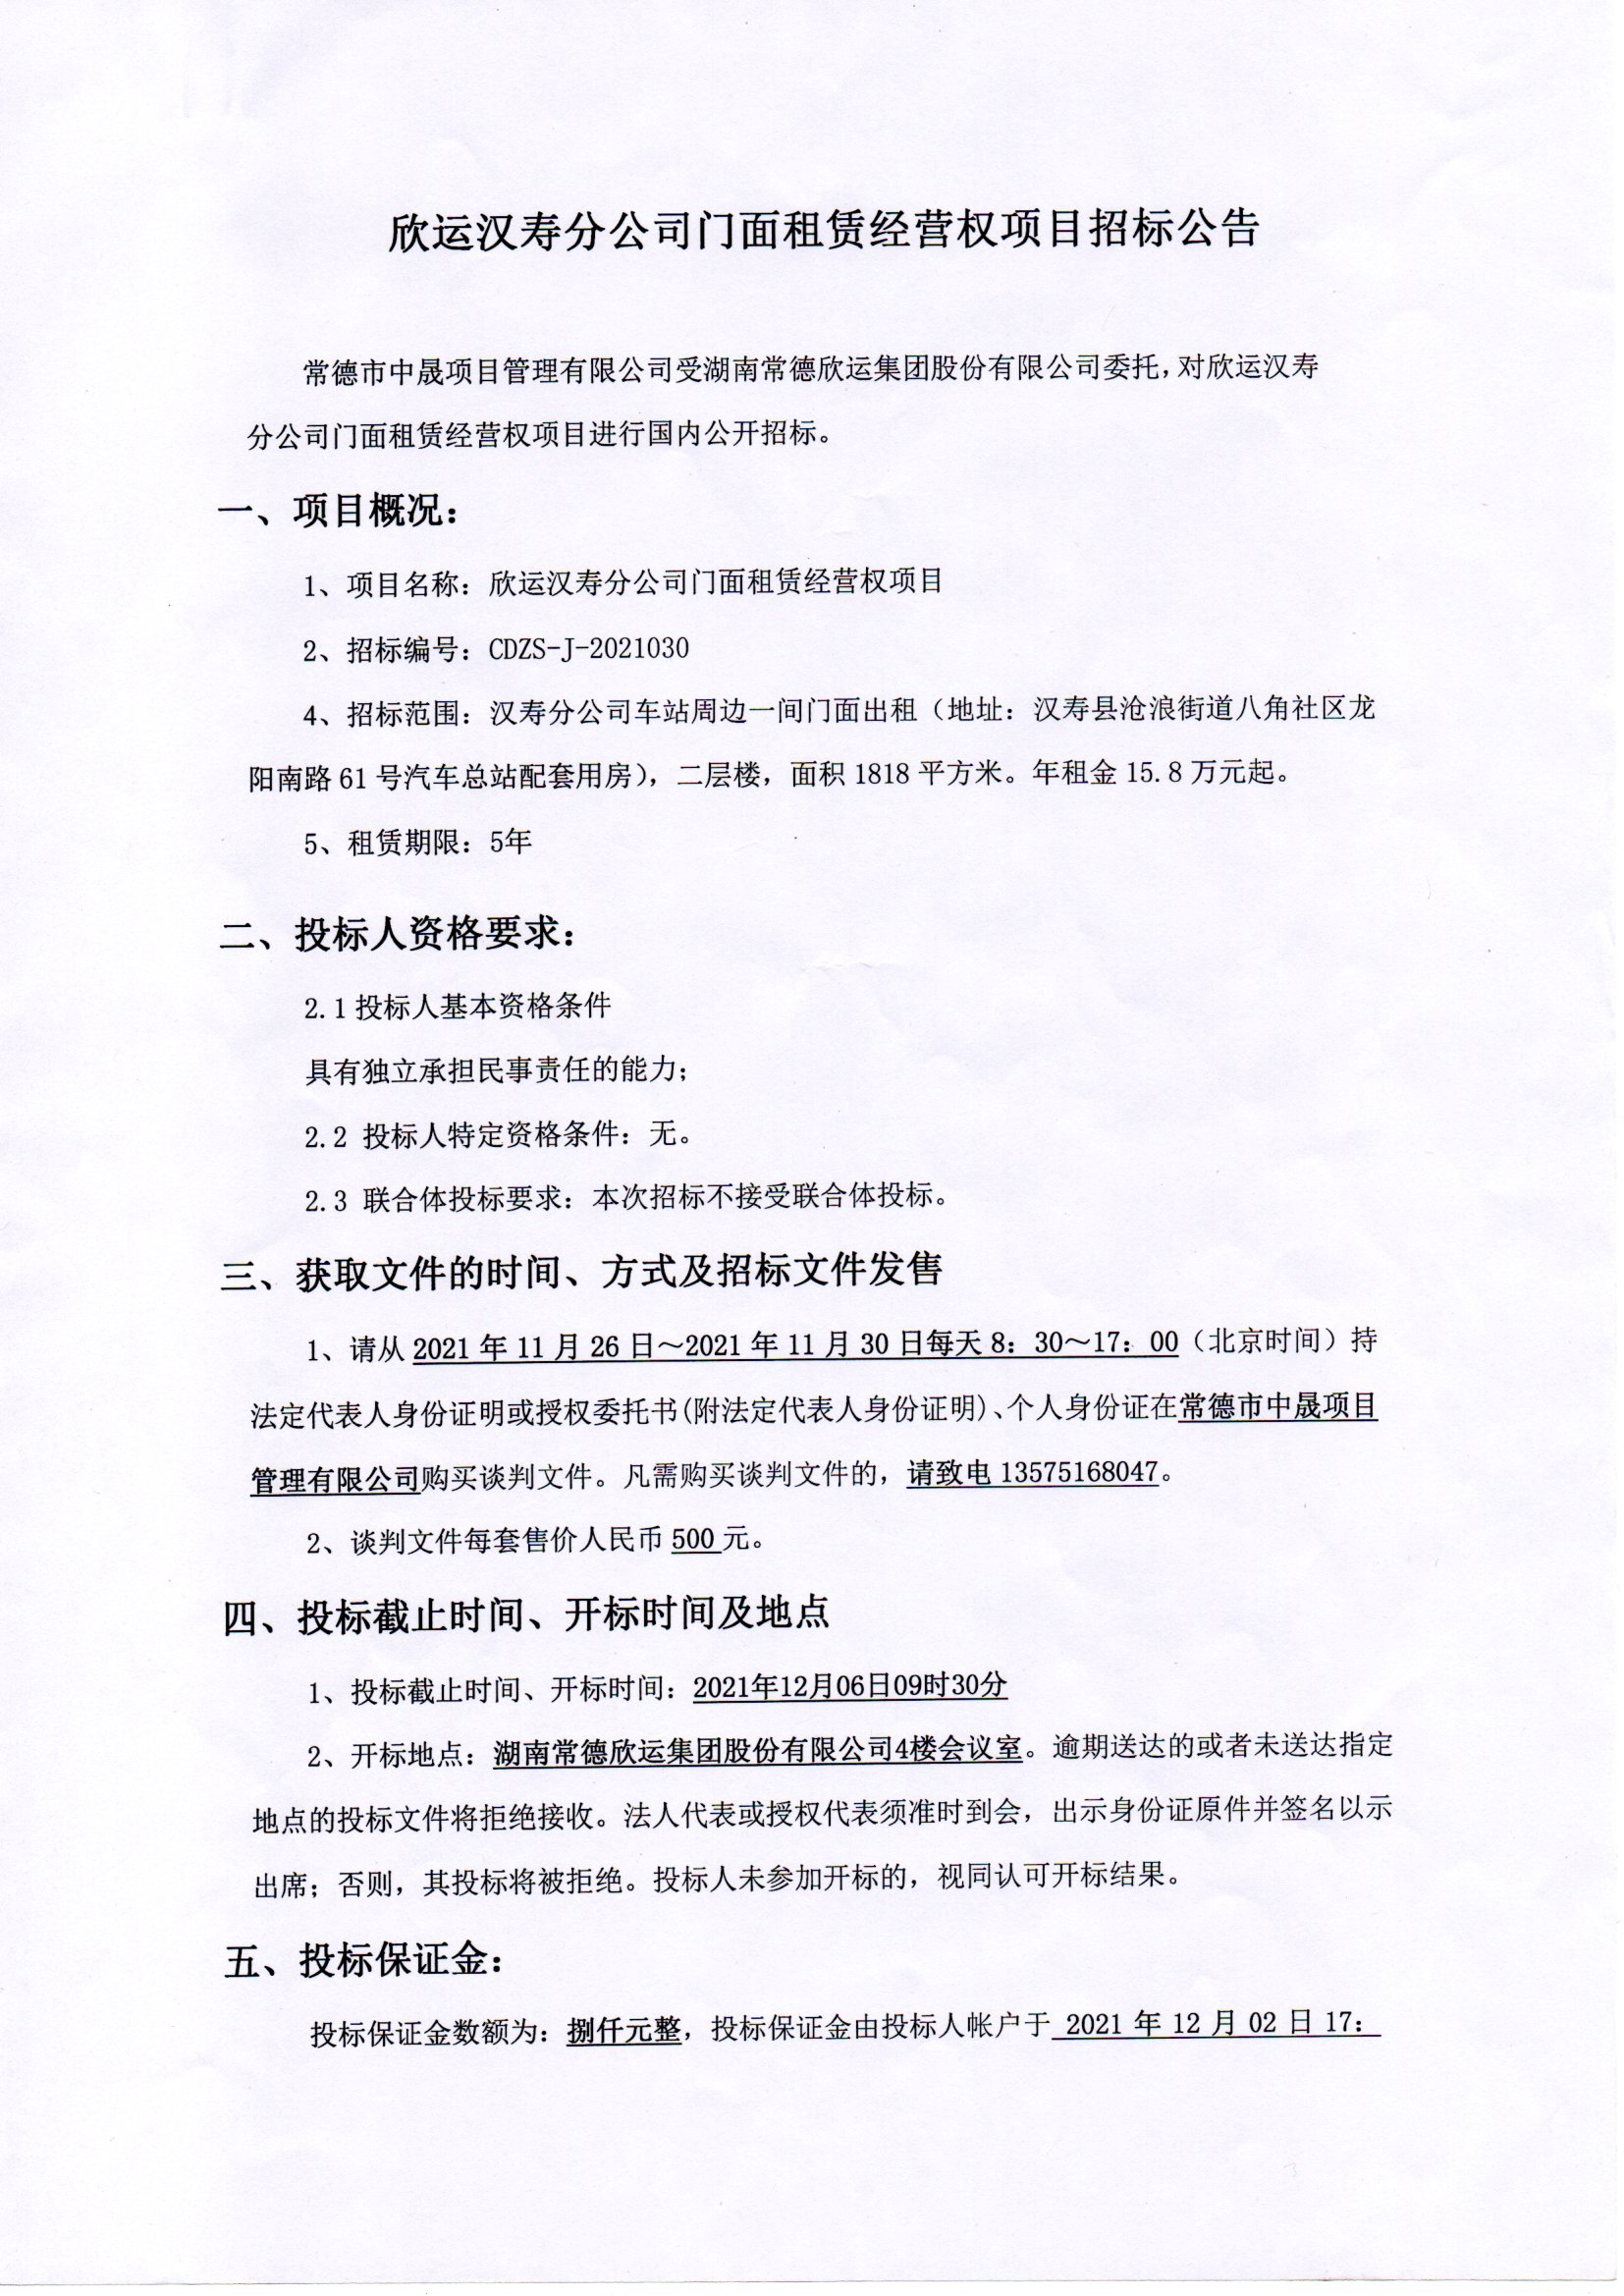 欣运汉寿分公司门面租赁经营权项目招标公告(图1)